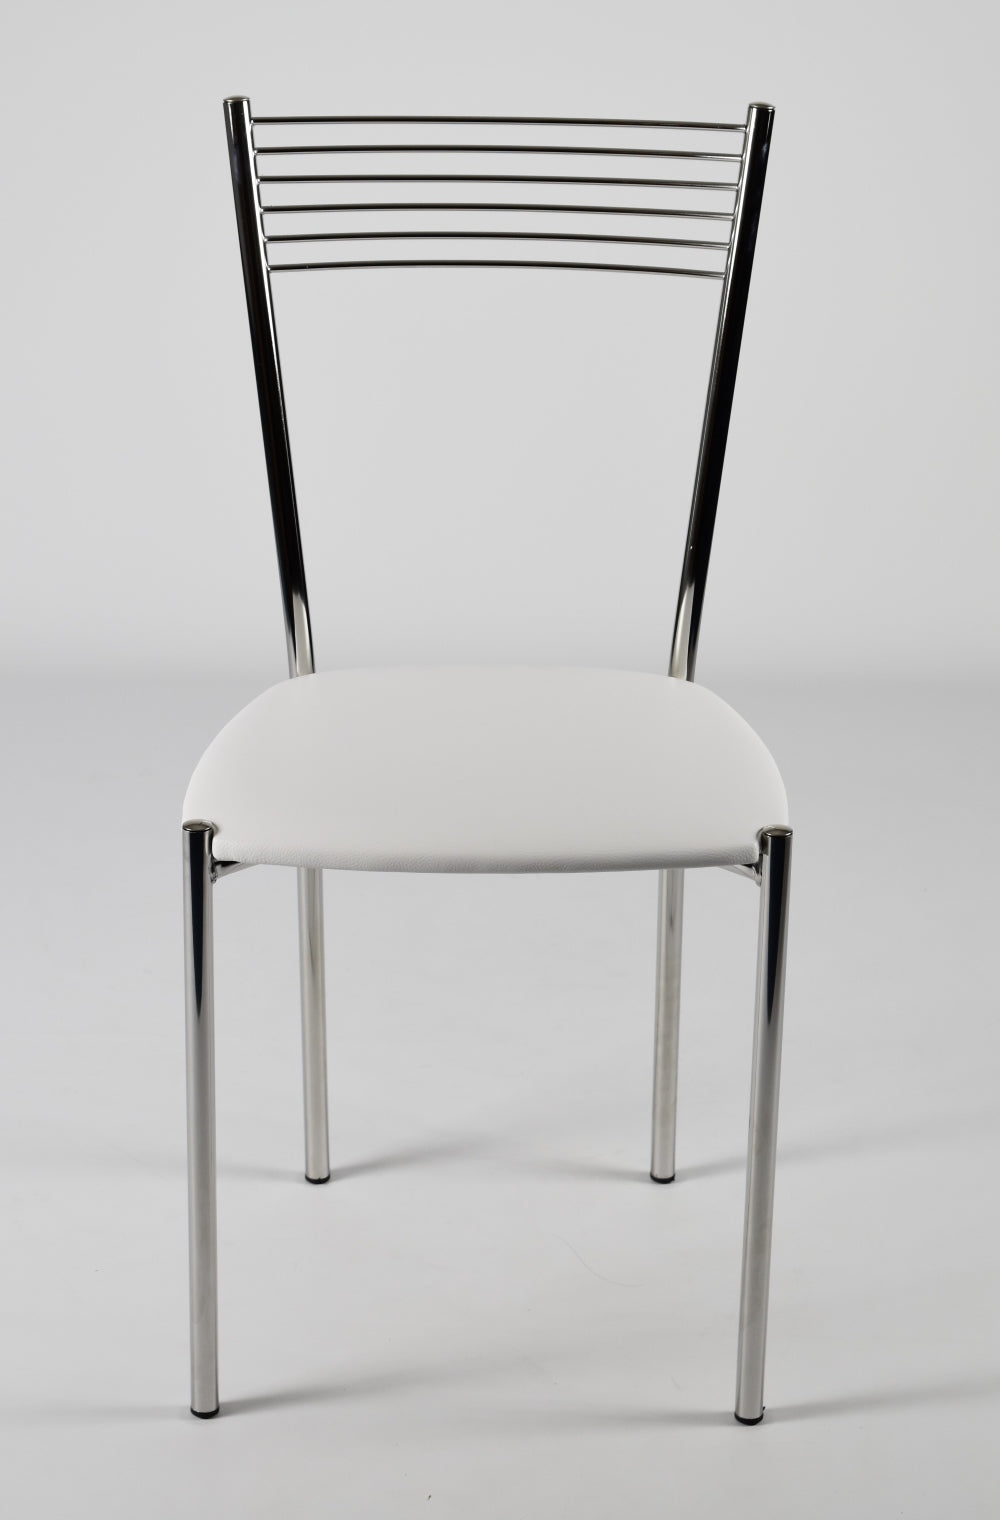 Tommychairs - Set 4 sillas de Cocina, Comedor, Bar y Restaurante Elegance, Estructura en Acero Cromado y Asiento tapizado en Polipiel Color Blanco